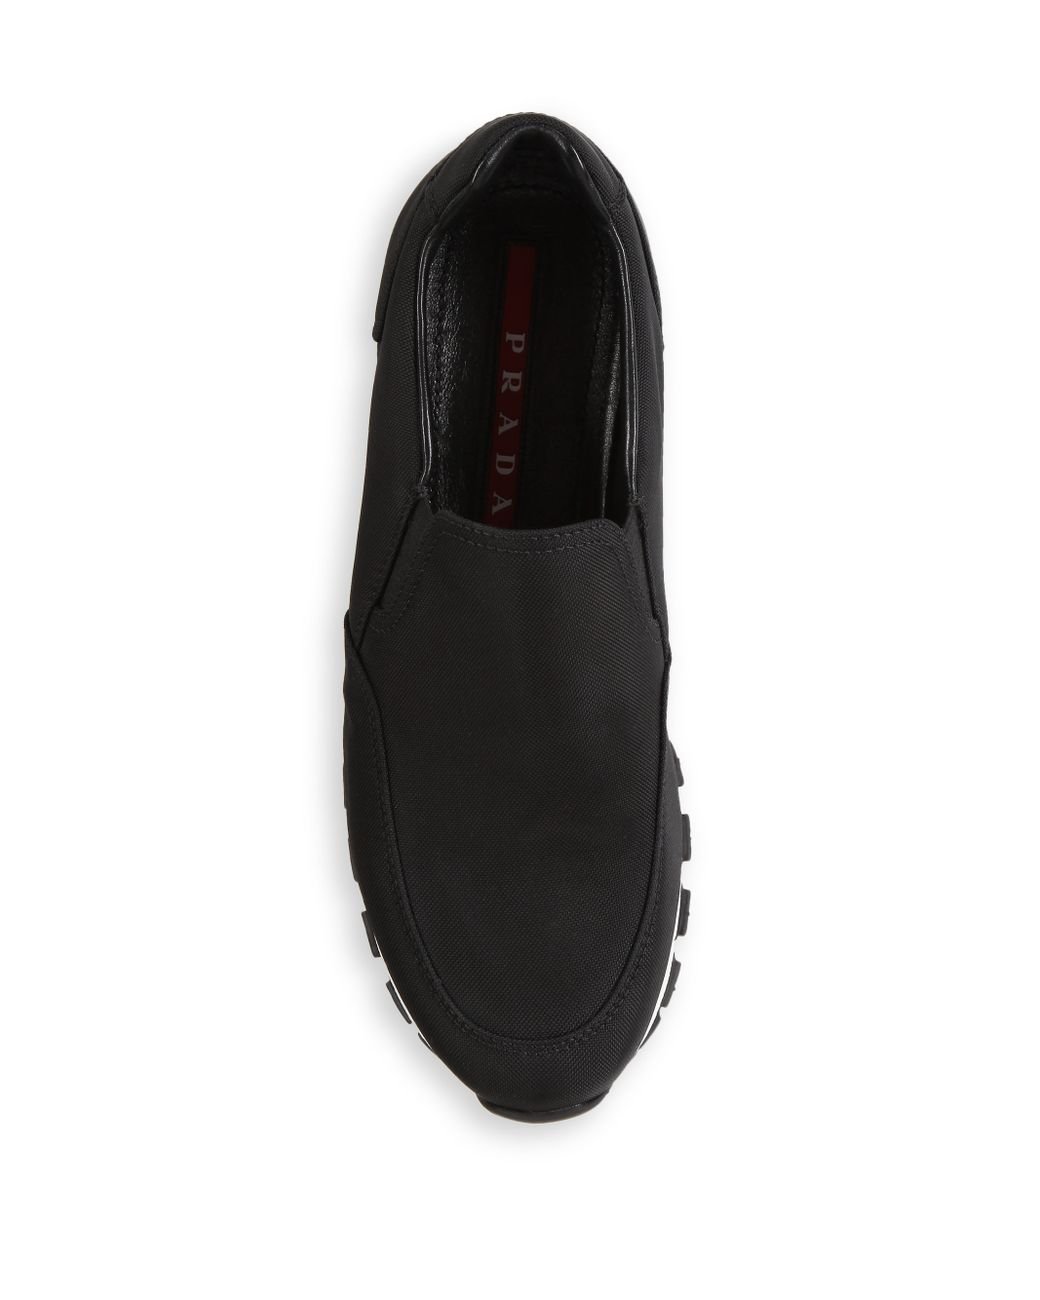 Prada Nylon Slip-on Sneakers in Black | Lyst